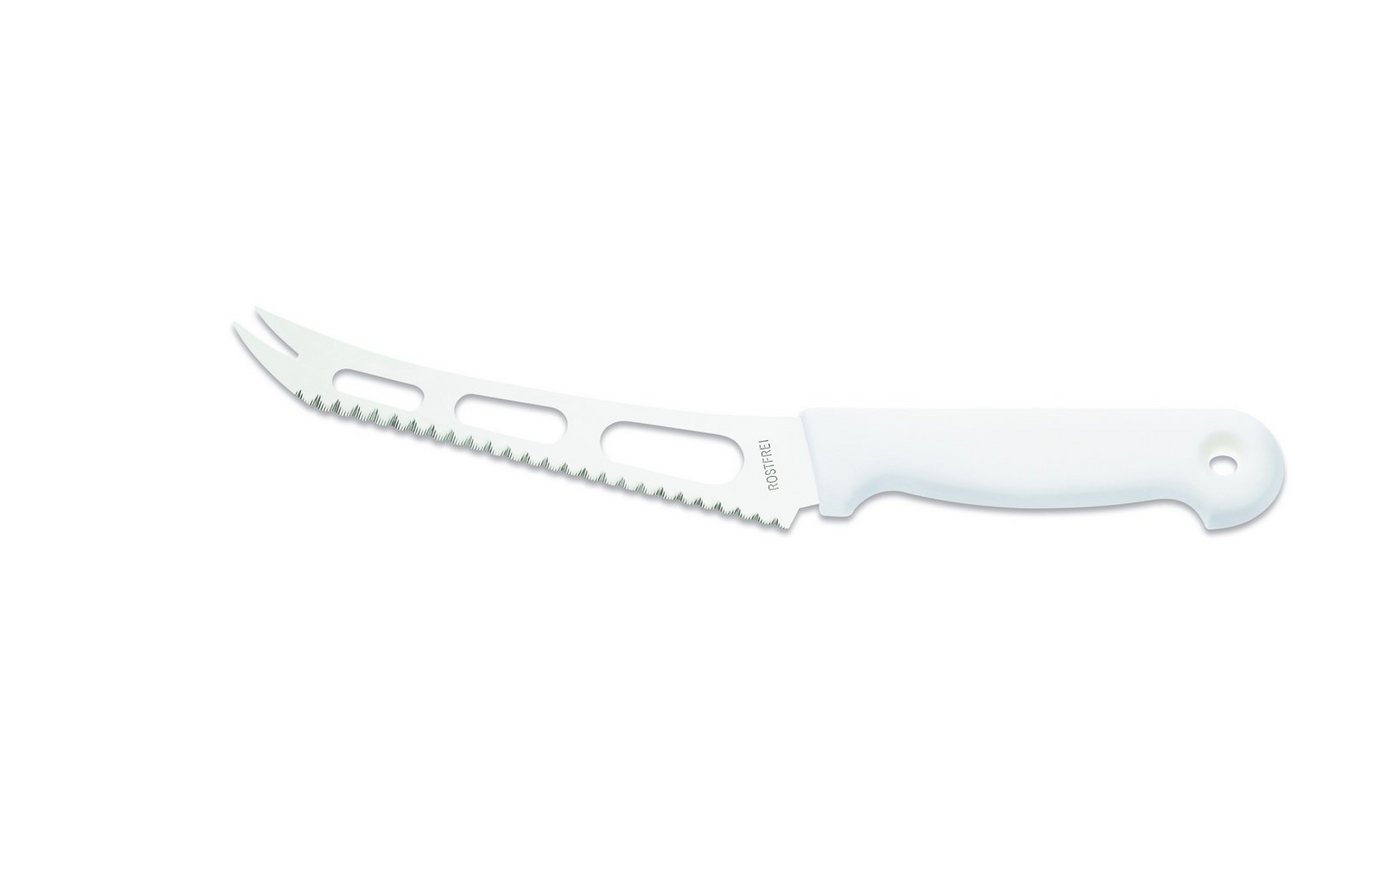 Giesser Messer Käsemesser Weichkäsemesser 9655 sp 15, reibungsarme Aussparungen an der Klinge für alle Käsearten von Giesser Messer